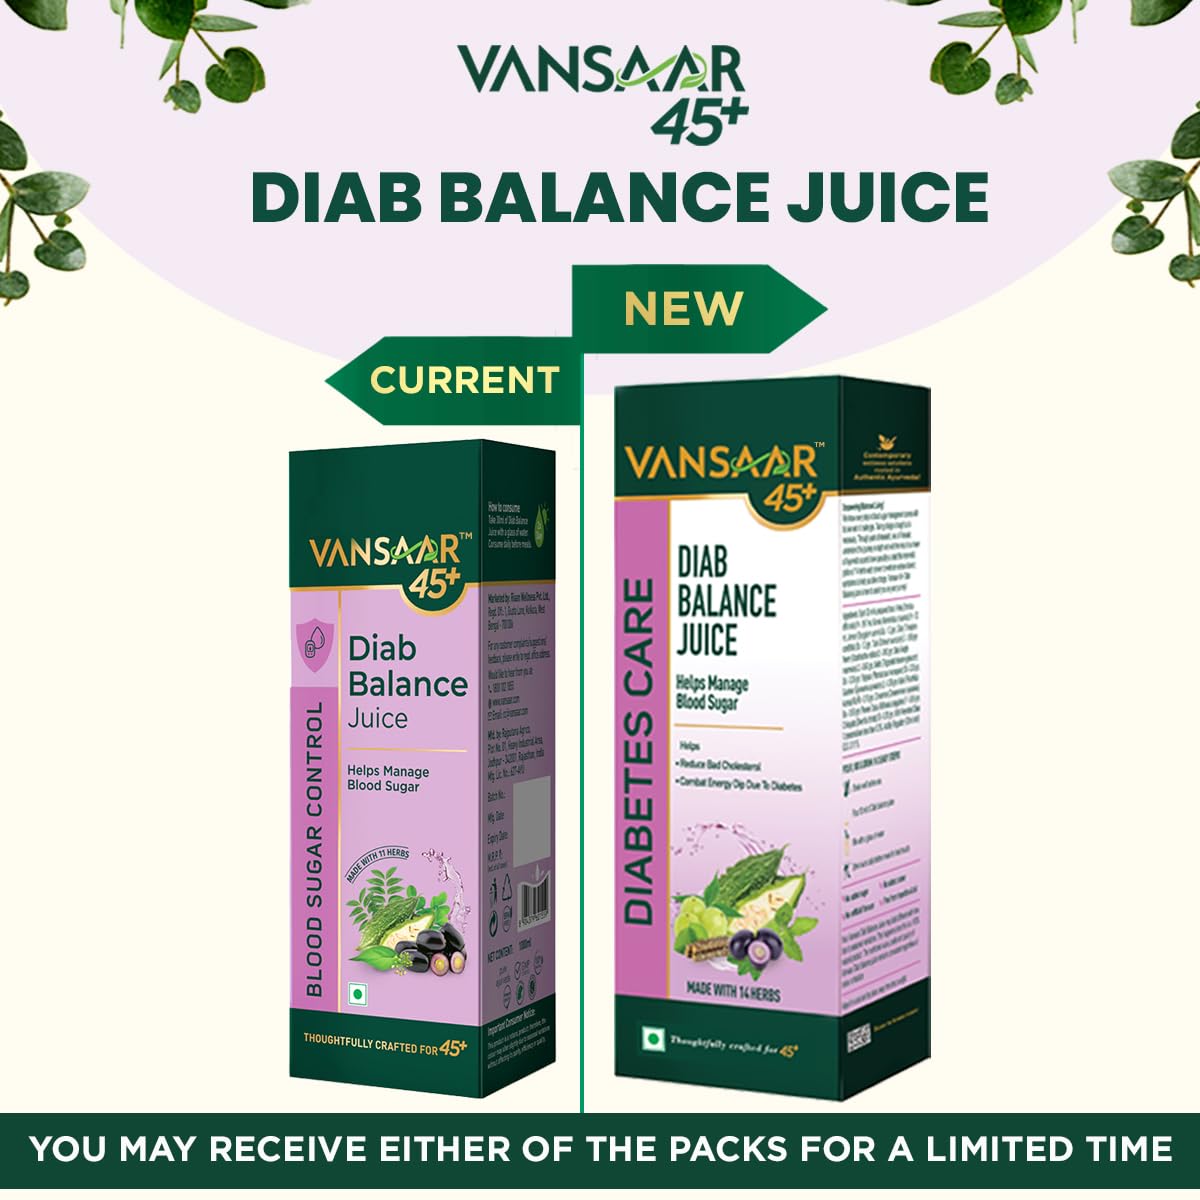 Vansaar 45+ Diab Balance Juice